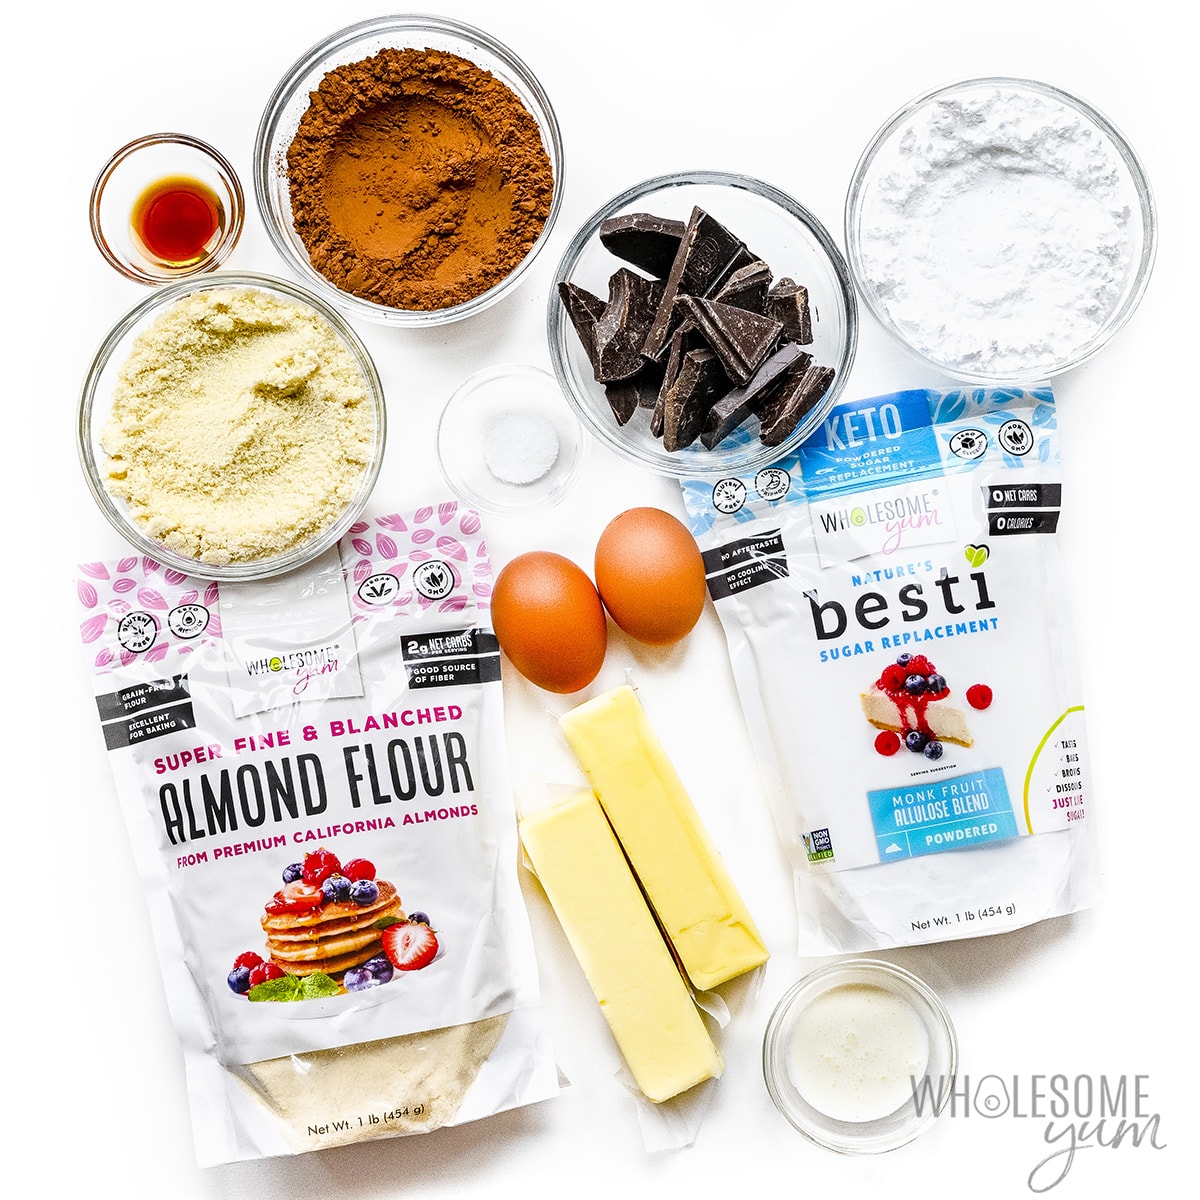 Almond flour brownies ingredients. 